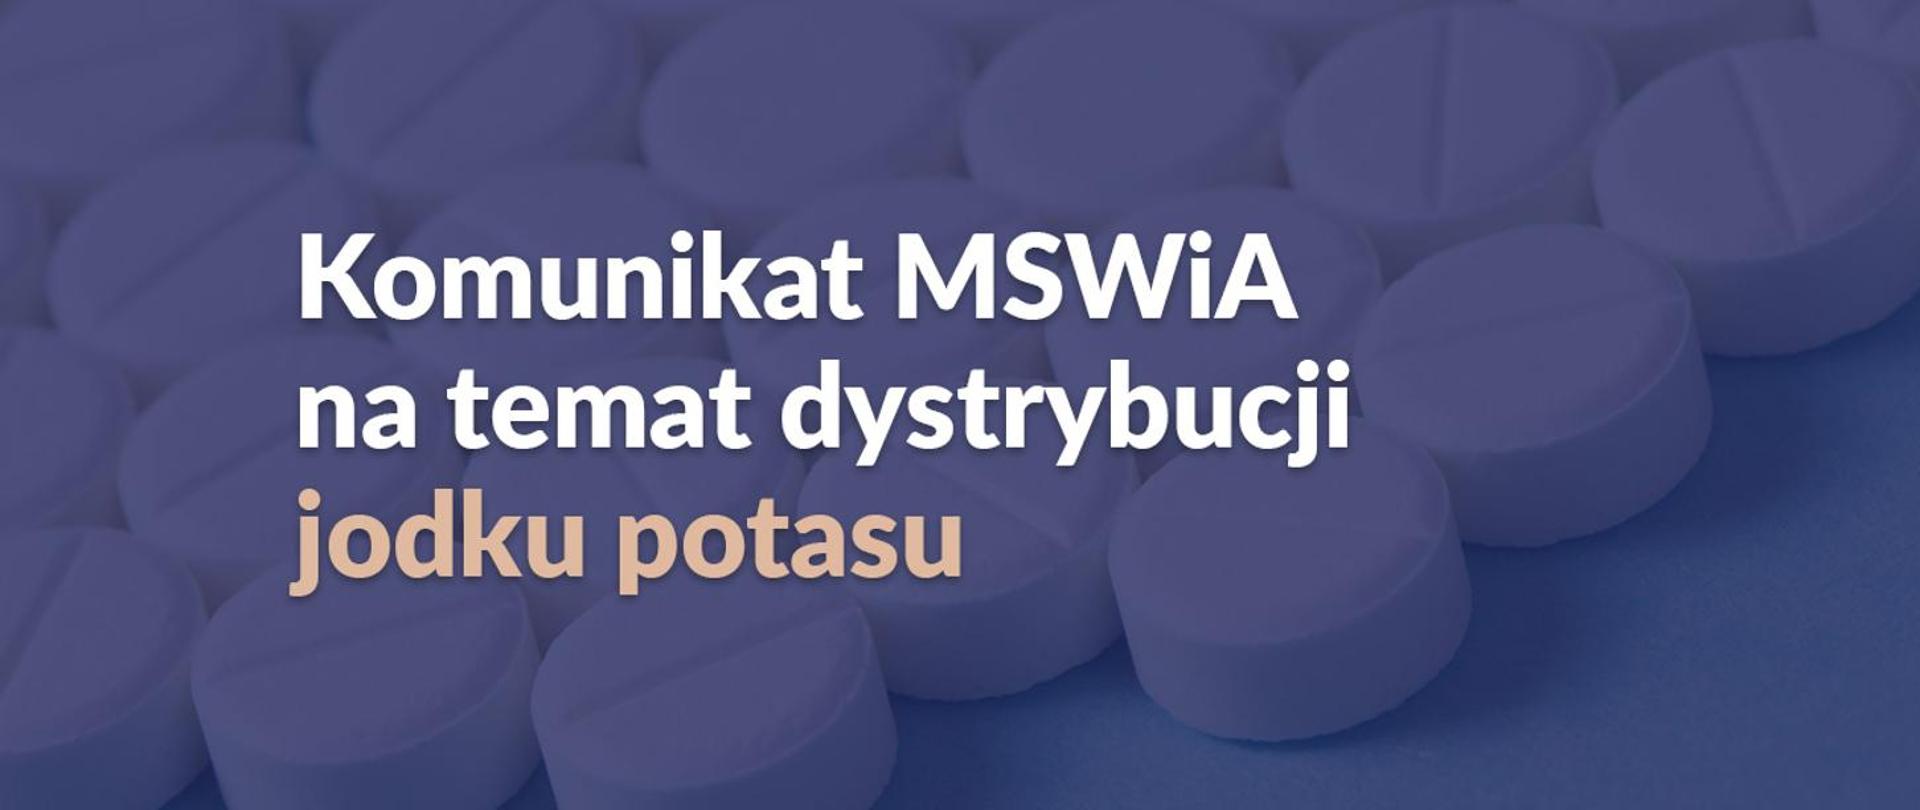 Na fioletowym tle napis: Komunikat MSWiA na temat dystrybucji jodku potasu.